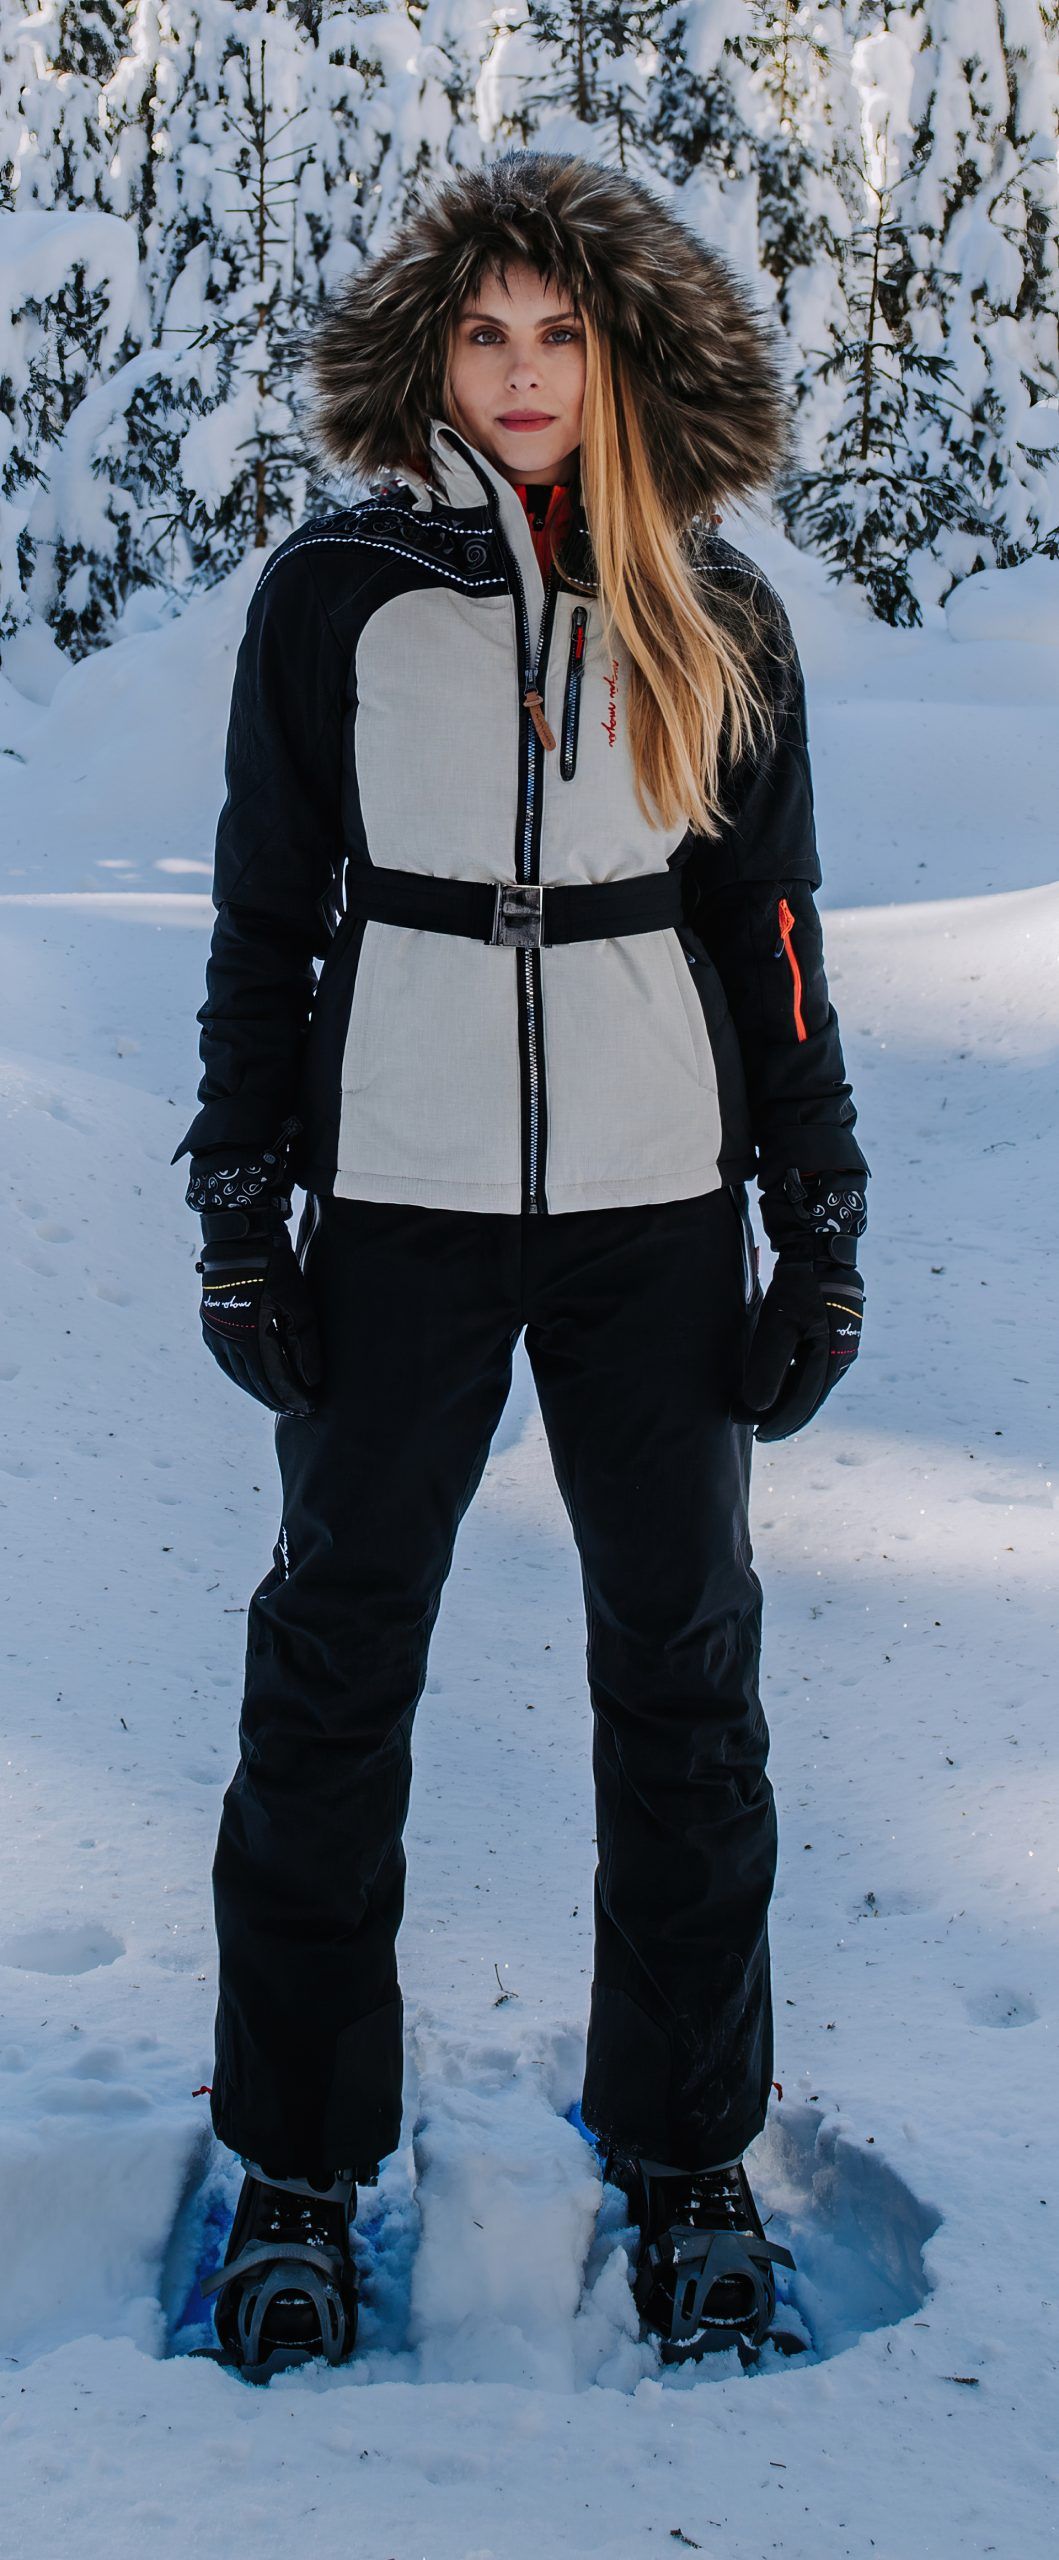 Shania Jacket - Women's Designer Ski Jacket